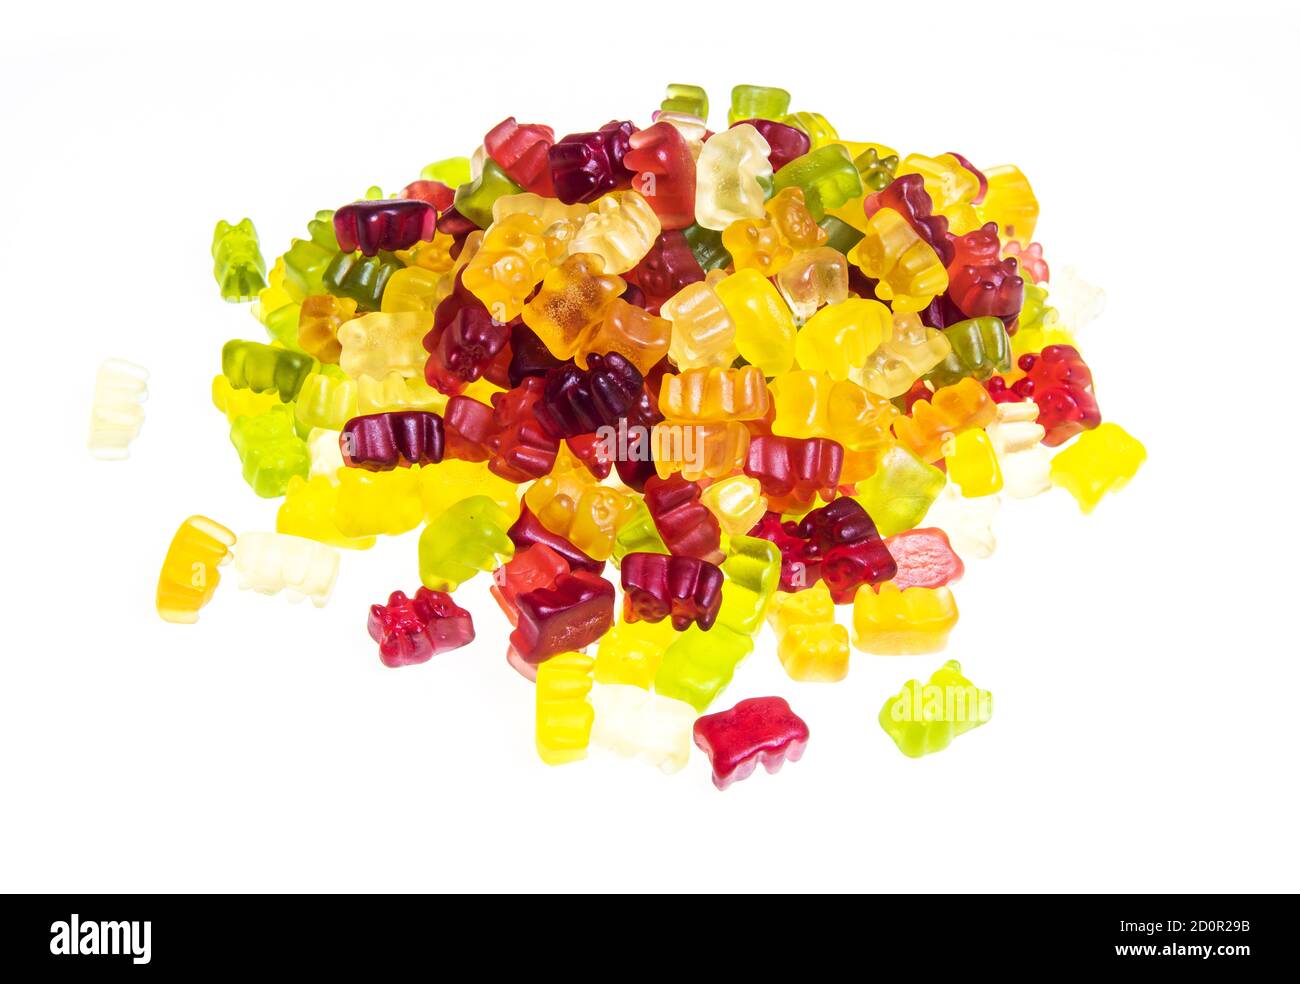 Tas de divers bonbons d'ours en gelée multicolores isolés sur un arrière-plan blanc Banque D'Images